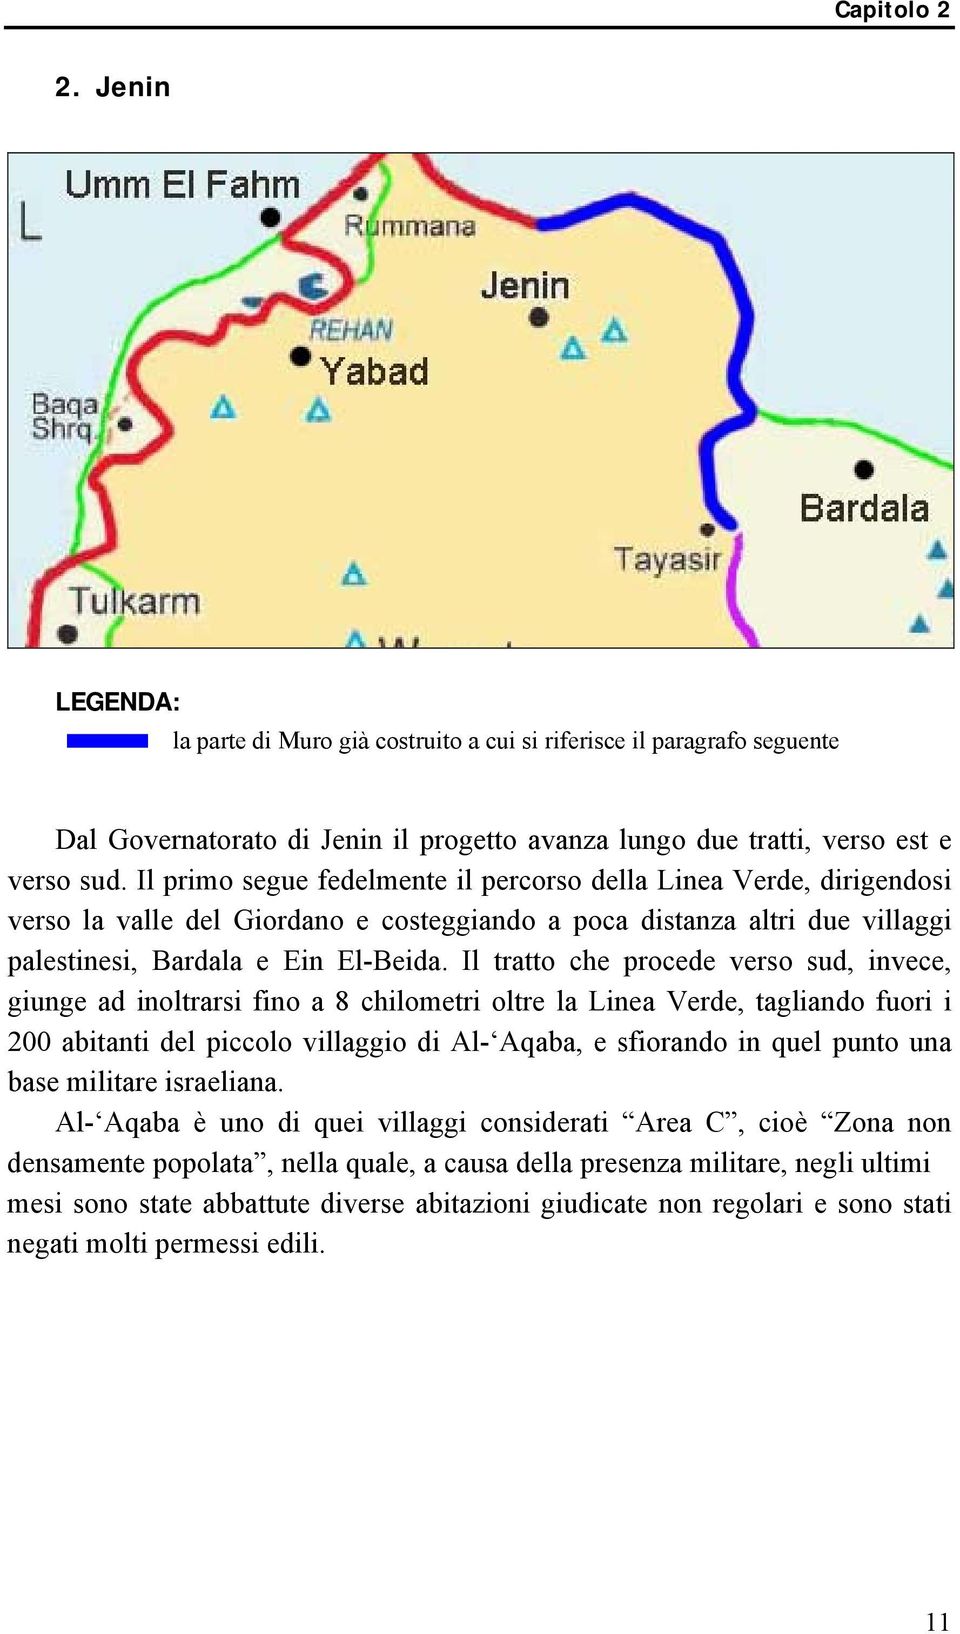 Il tratto che procede verso sud, invece, giunge ad inoltrarsi fino a 8 chilometri oltre la Linea Verde, tagliando fuori i 200 abitanti del piccolo villaggio di Al- Aqaba, e sfiorando in quel punto